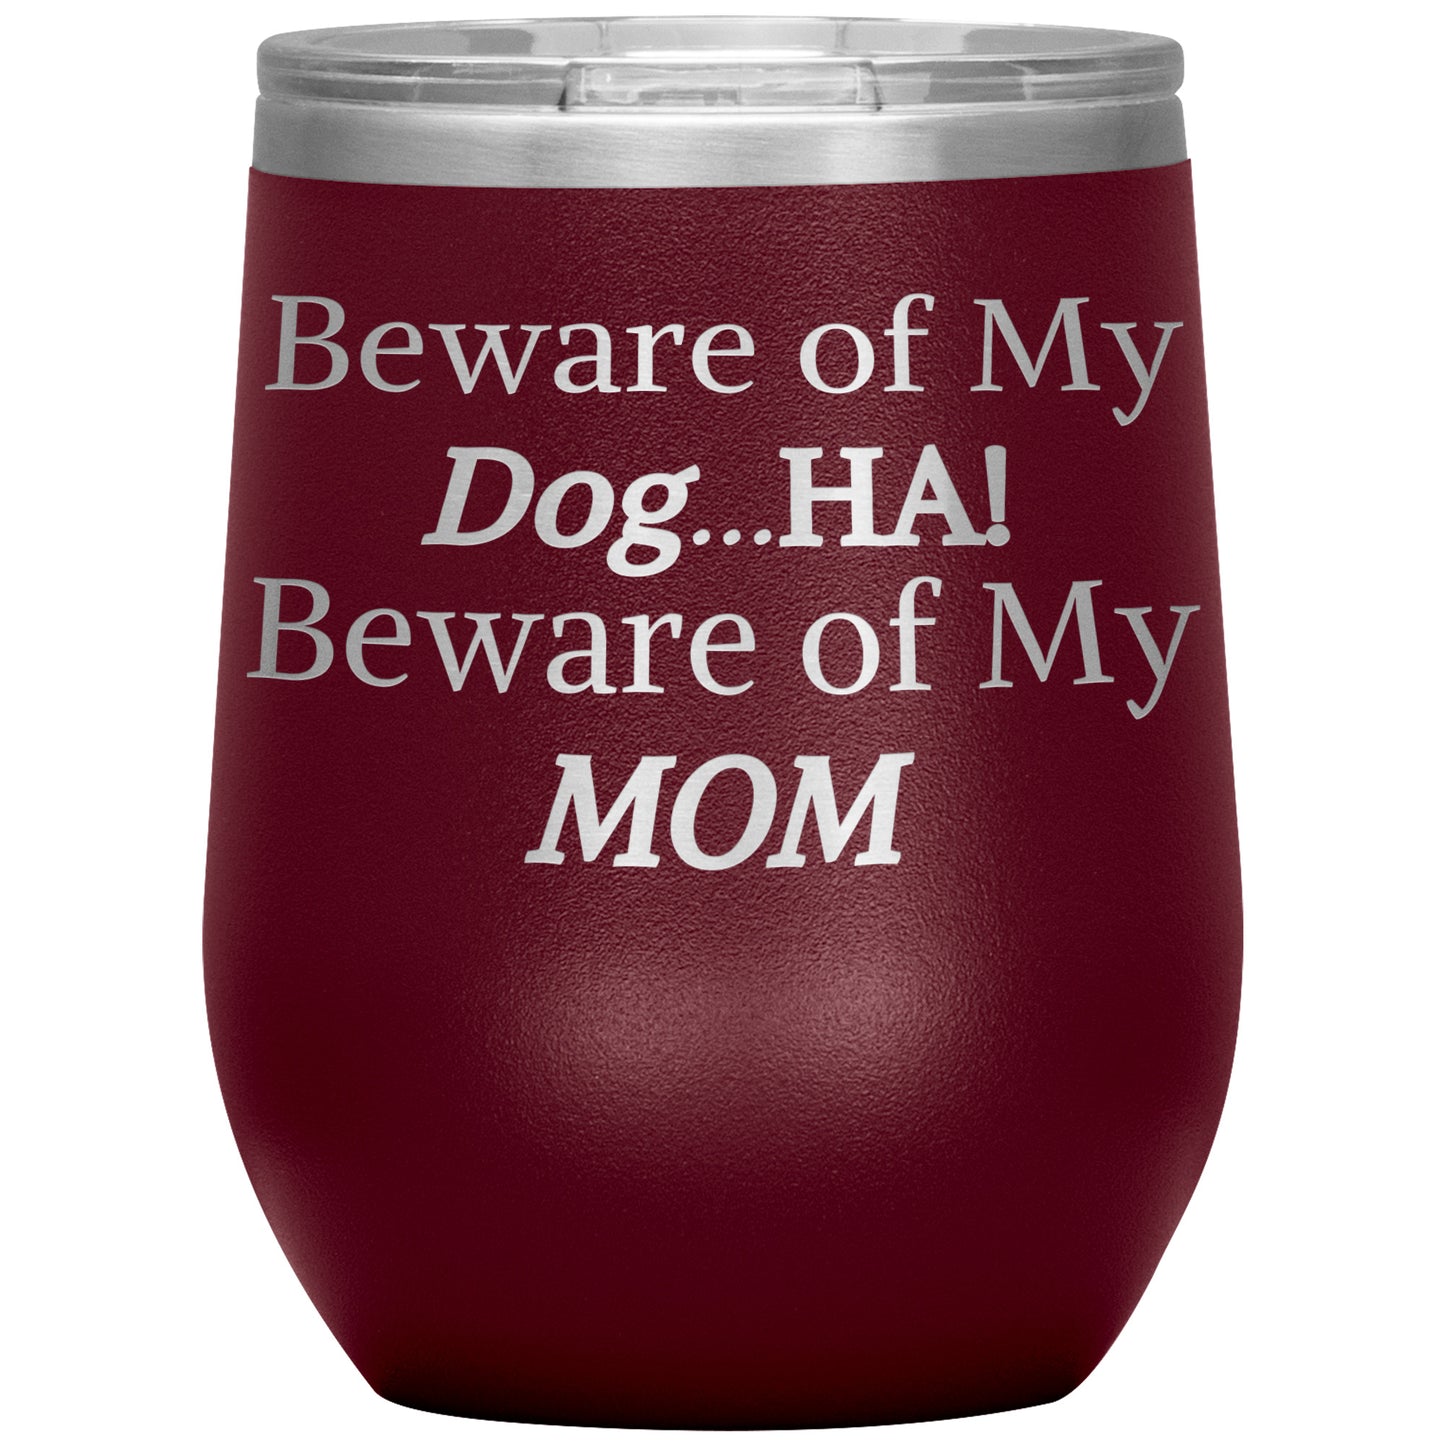 Beware of My Dog...Ha! Beware of My Mom Tumbler